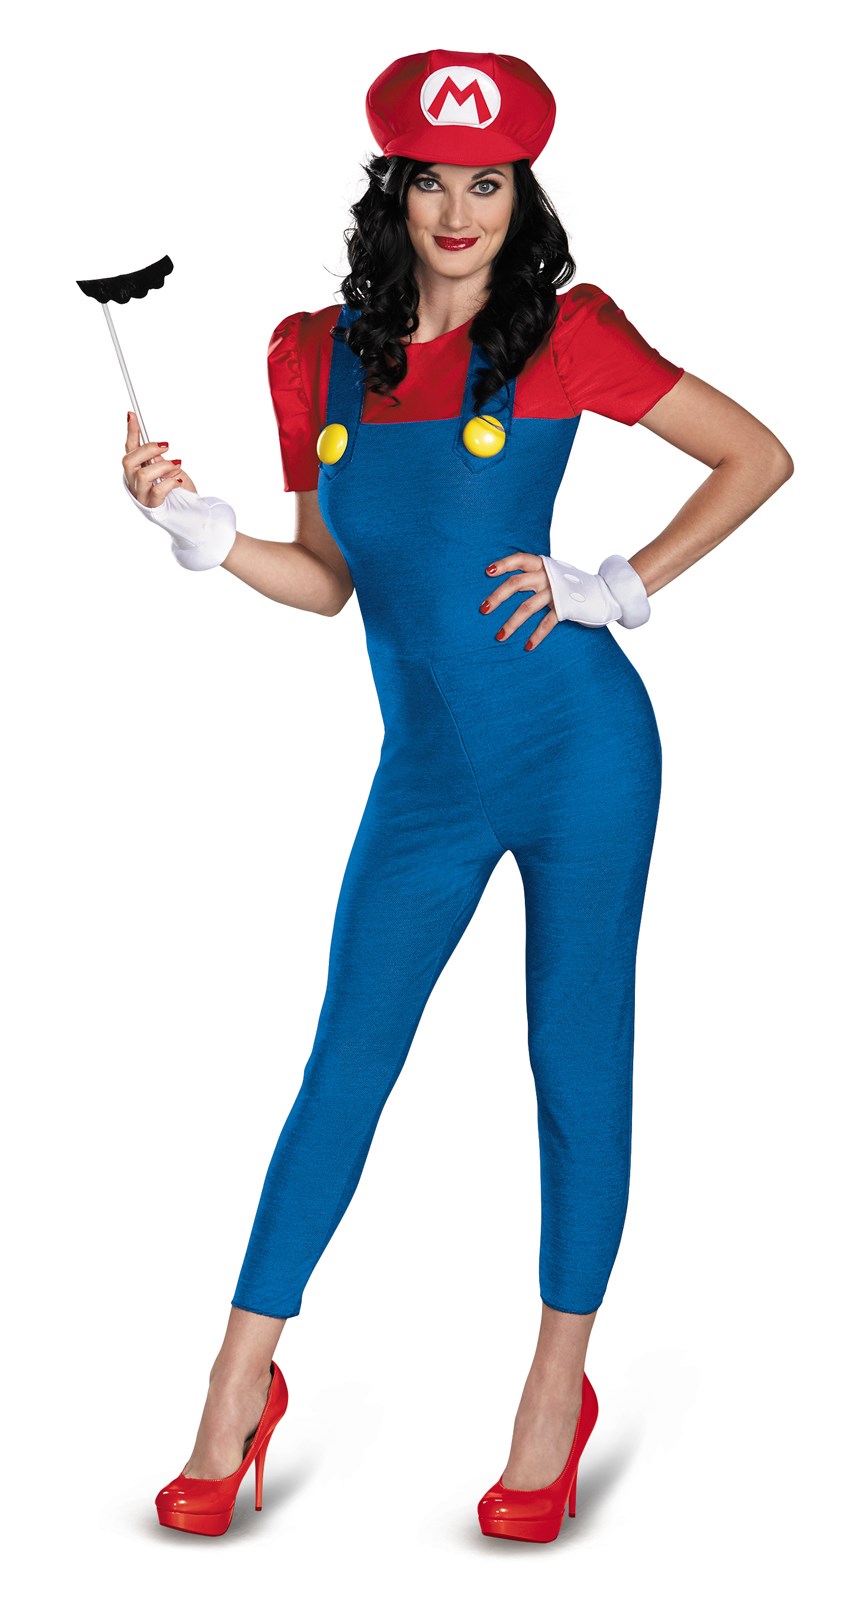 Super Mario Brothers - Deluxe Female Mario Costume